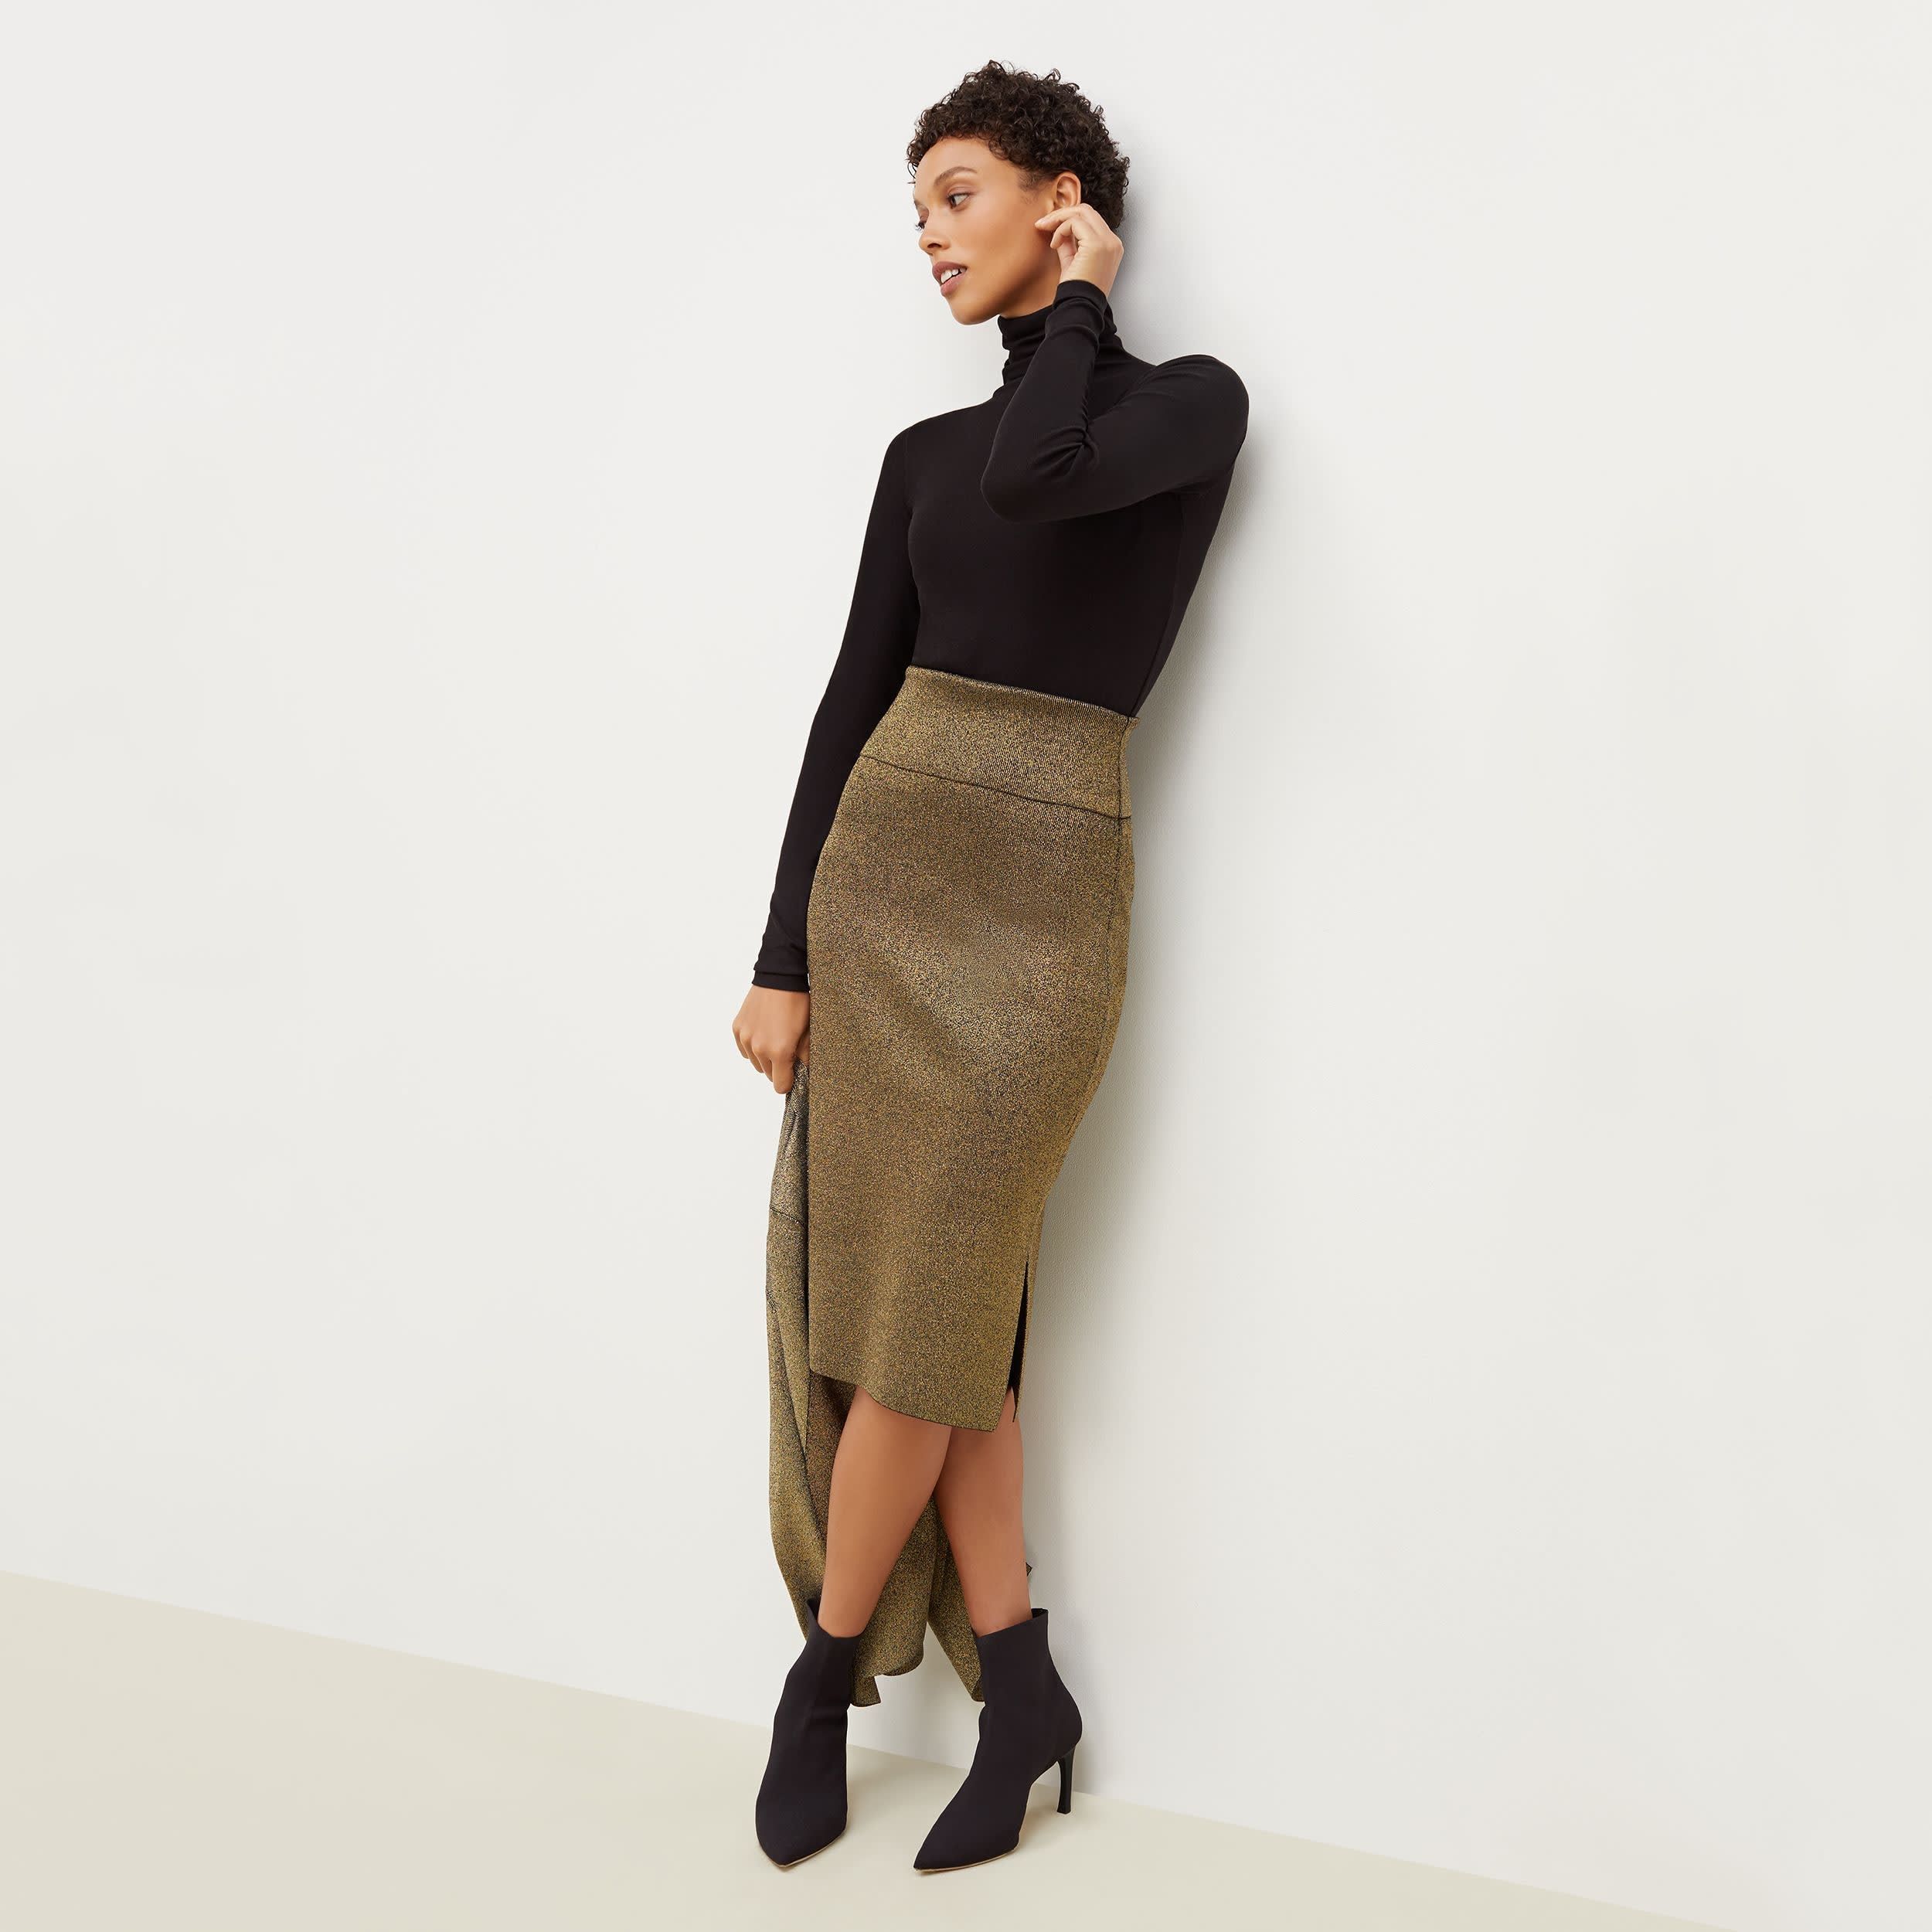 Harlem Skirt - Gold Knit :: Black / Gold | MM LaFleur